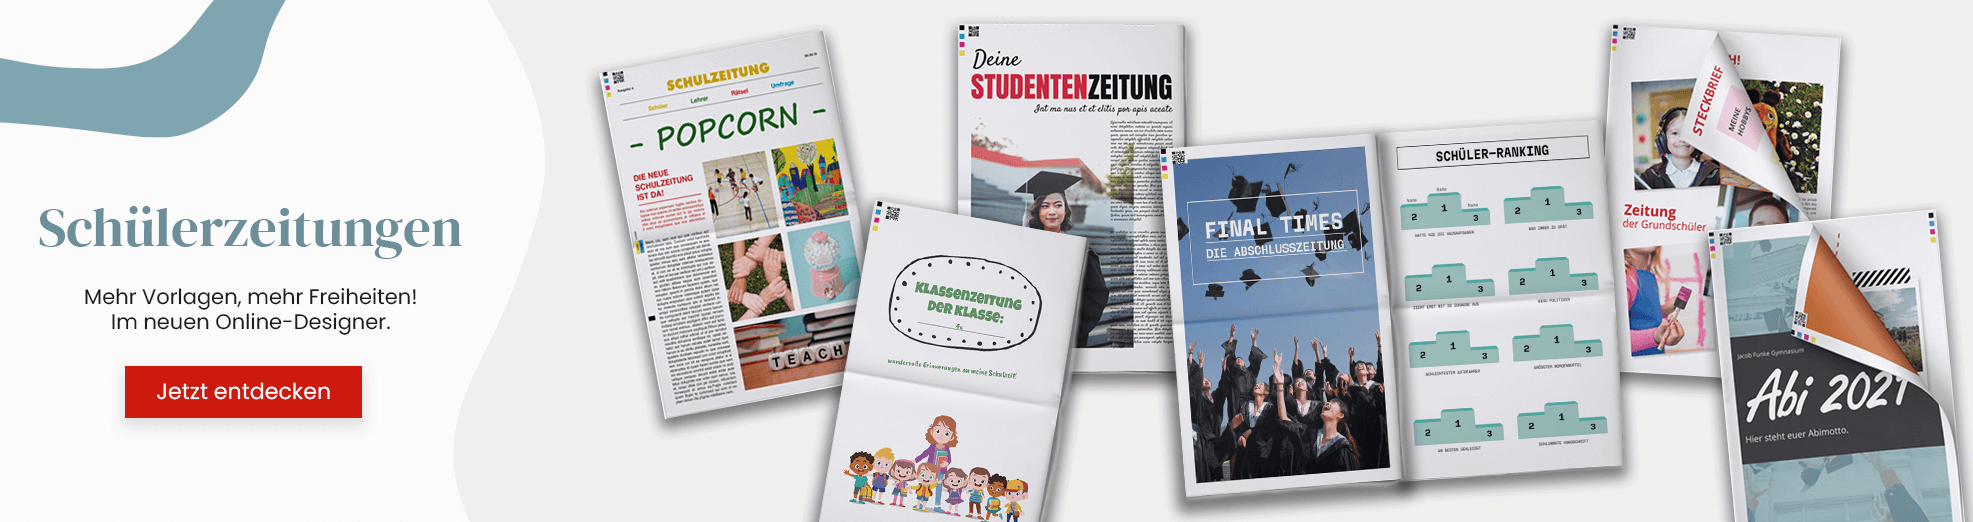 Mehr Vorlagen für Schülerzeitungen im neuen Online-Designer